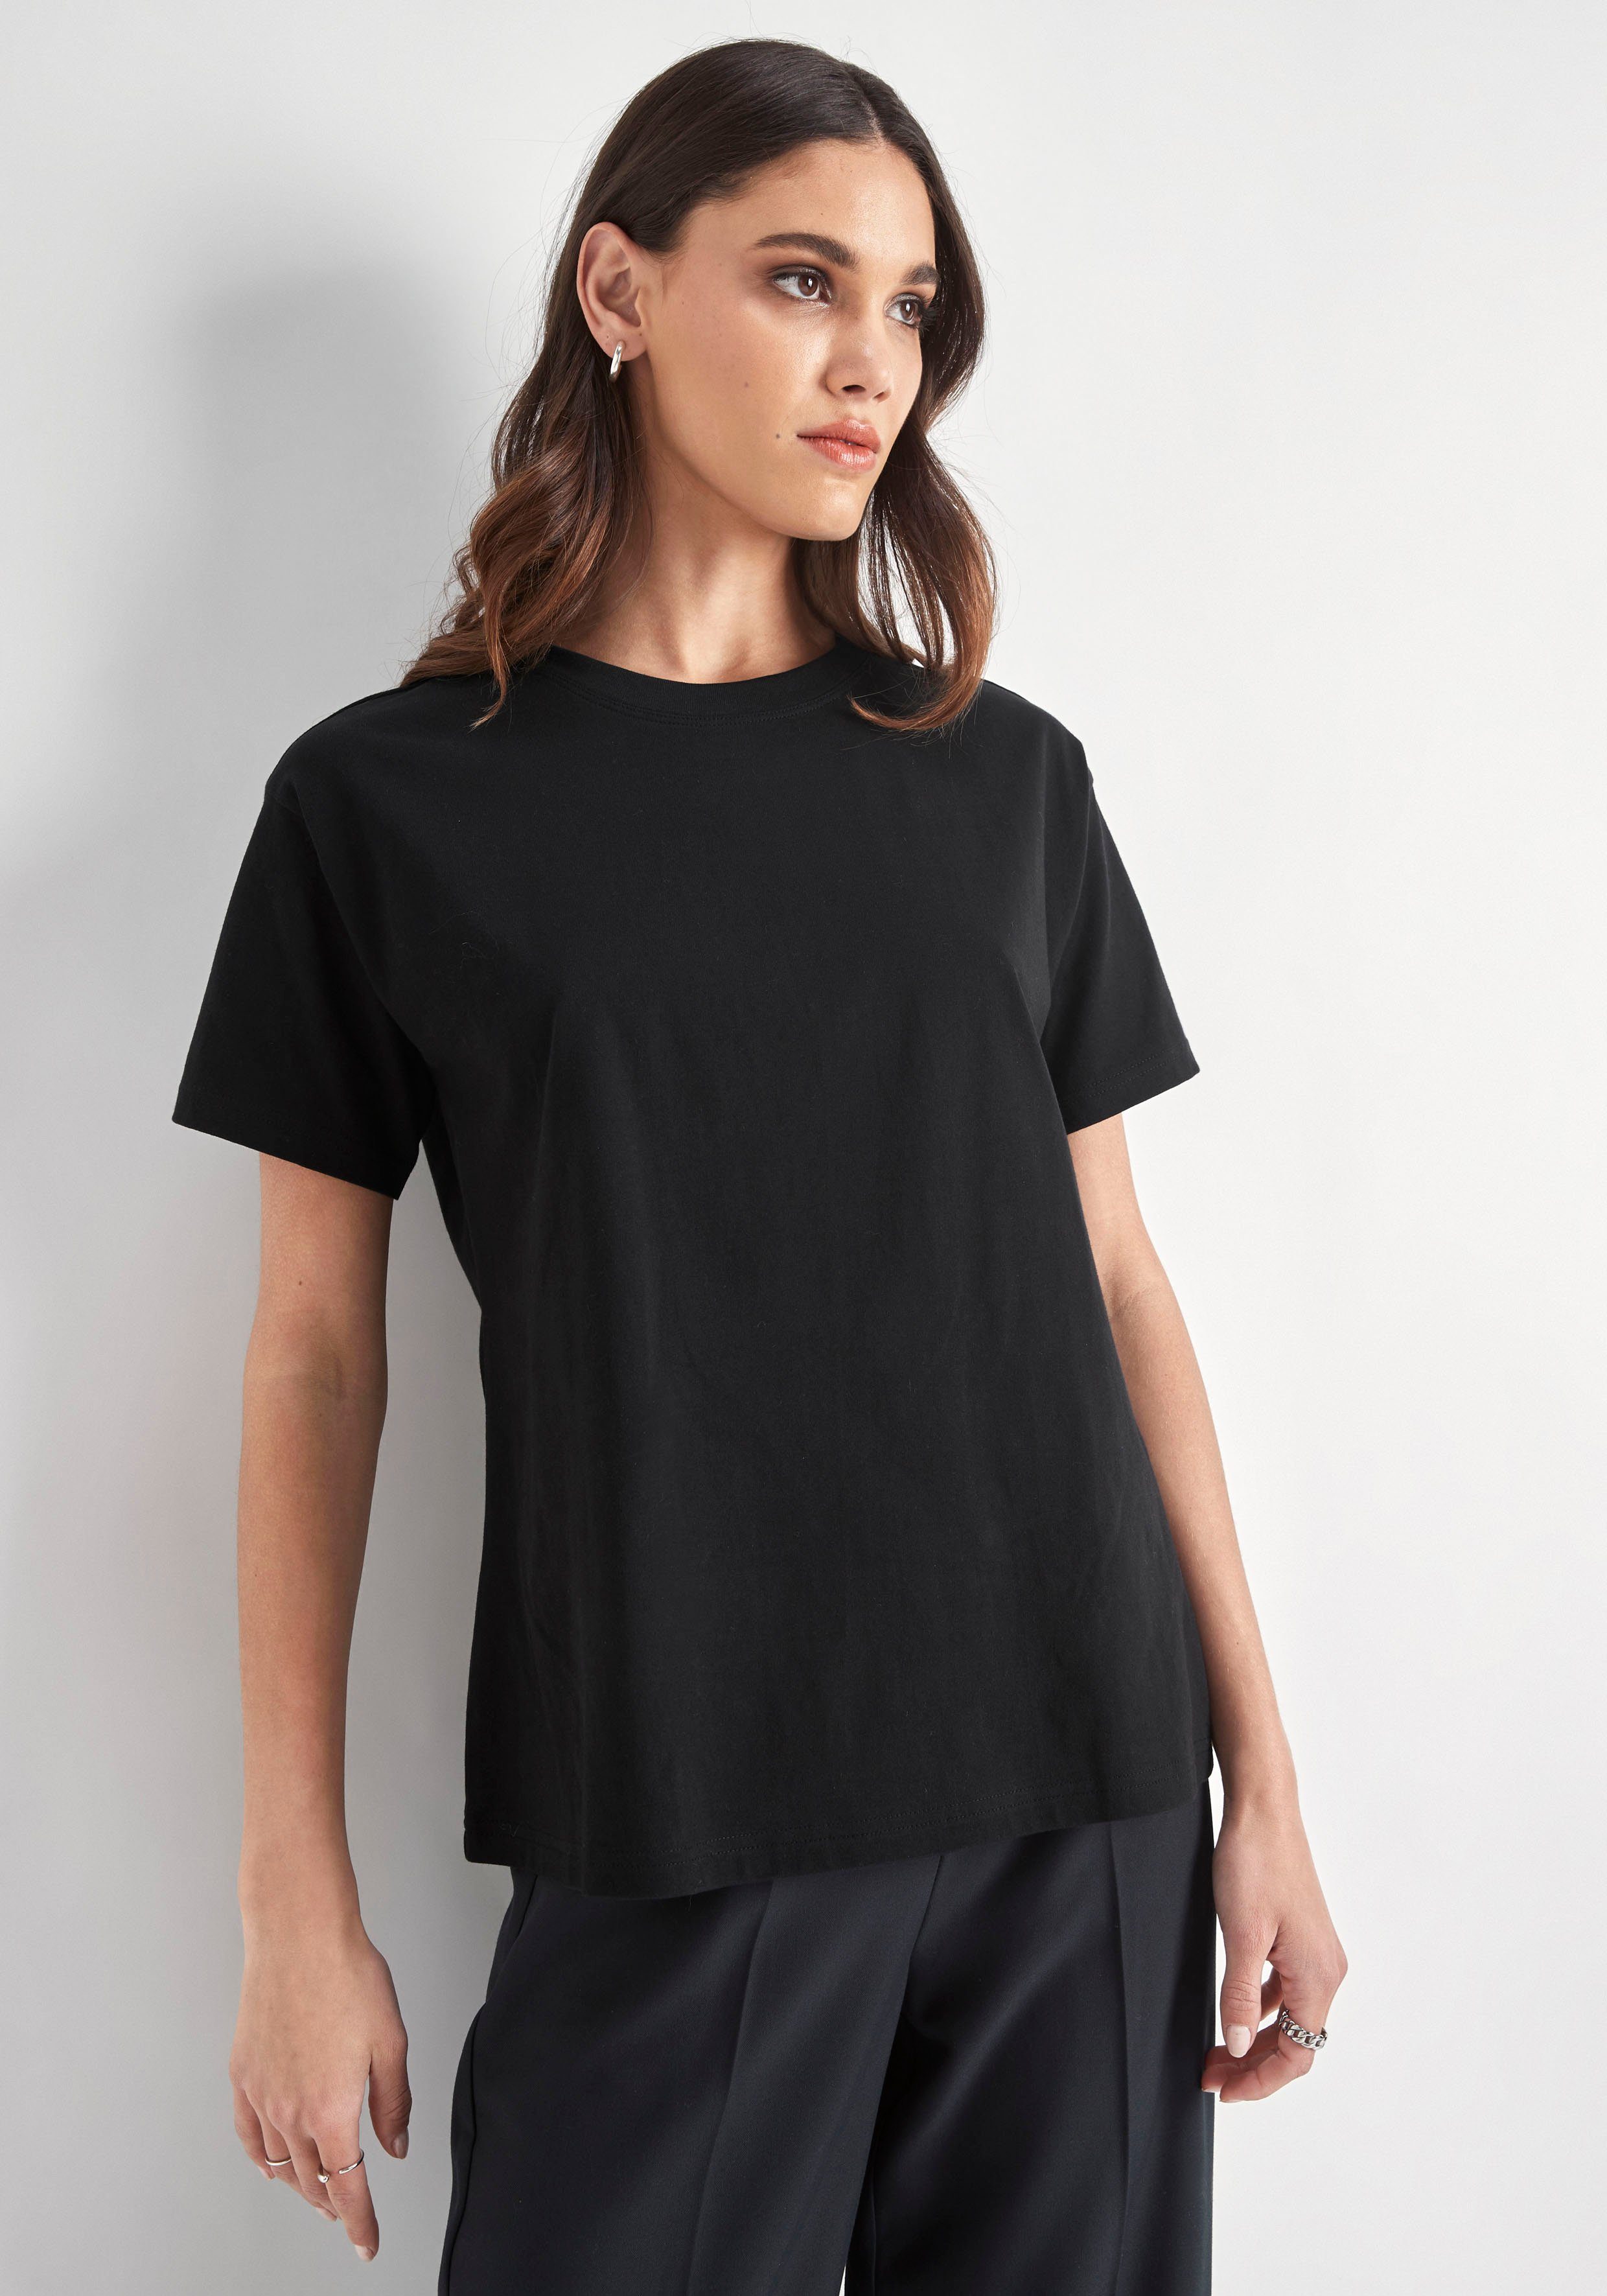 Rundhalsausschnitt PARIS mit HECHTER schwarz T-Shirt